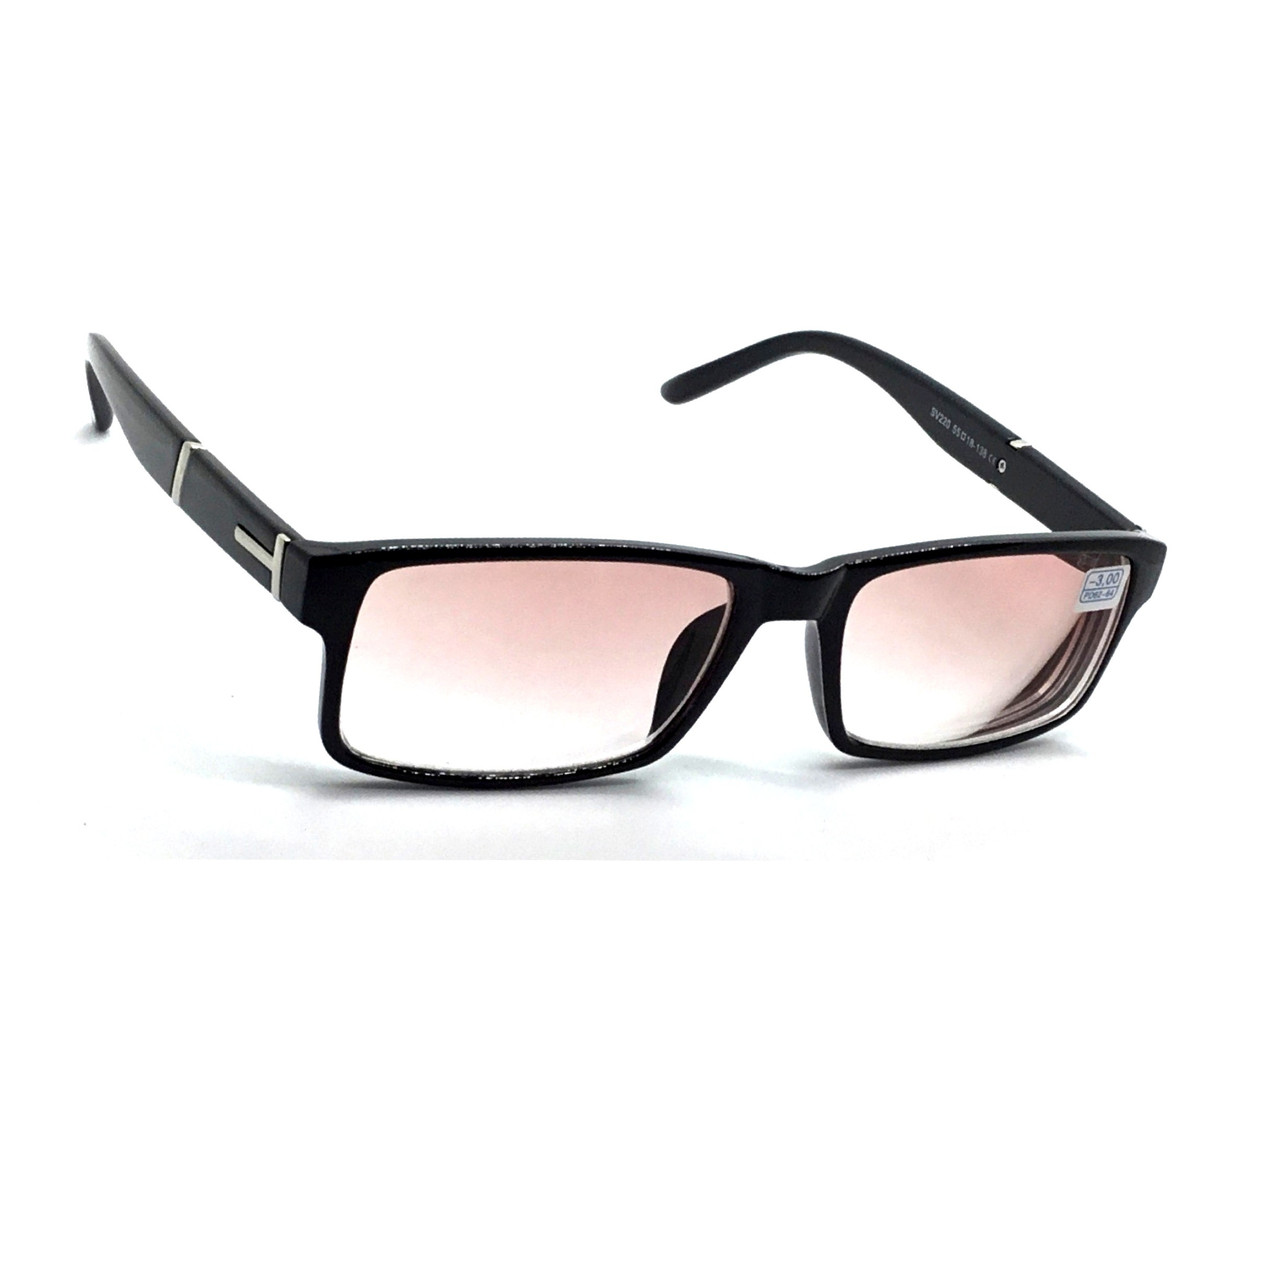 Універсальні чорні пластикові окуляри 220 мінус тонований -1.0